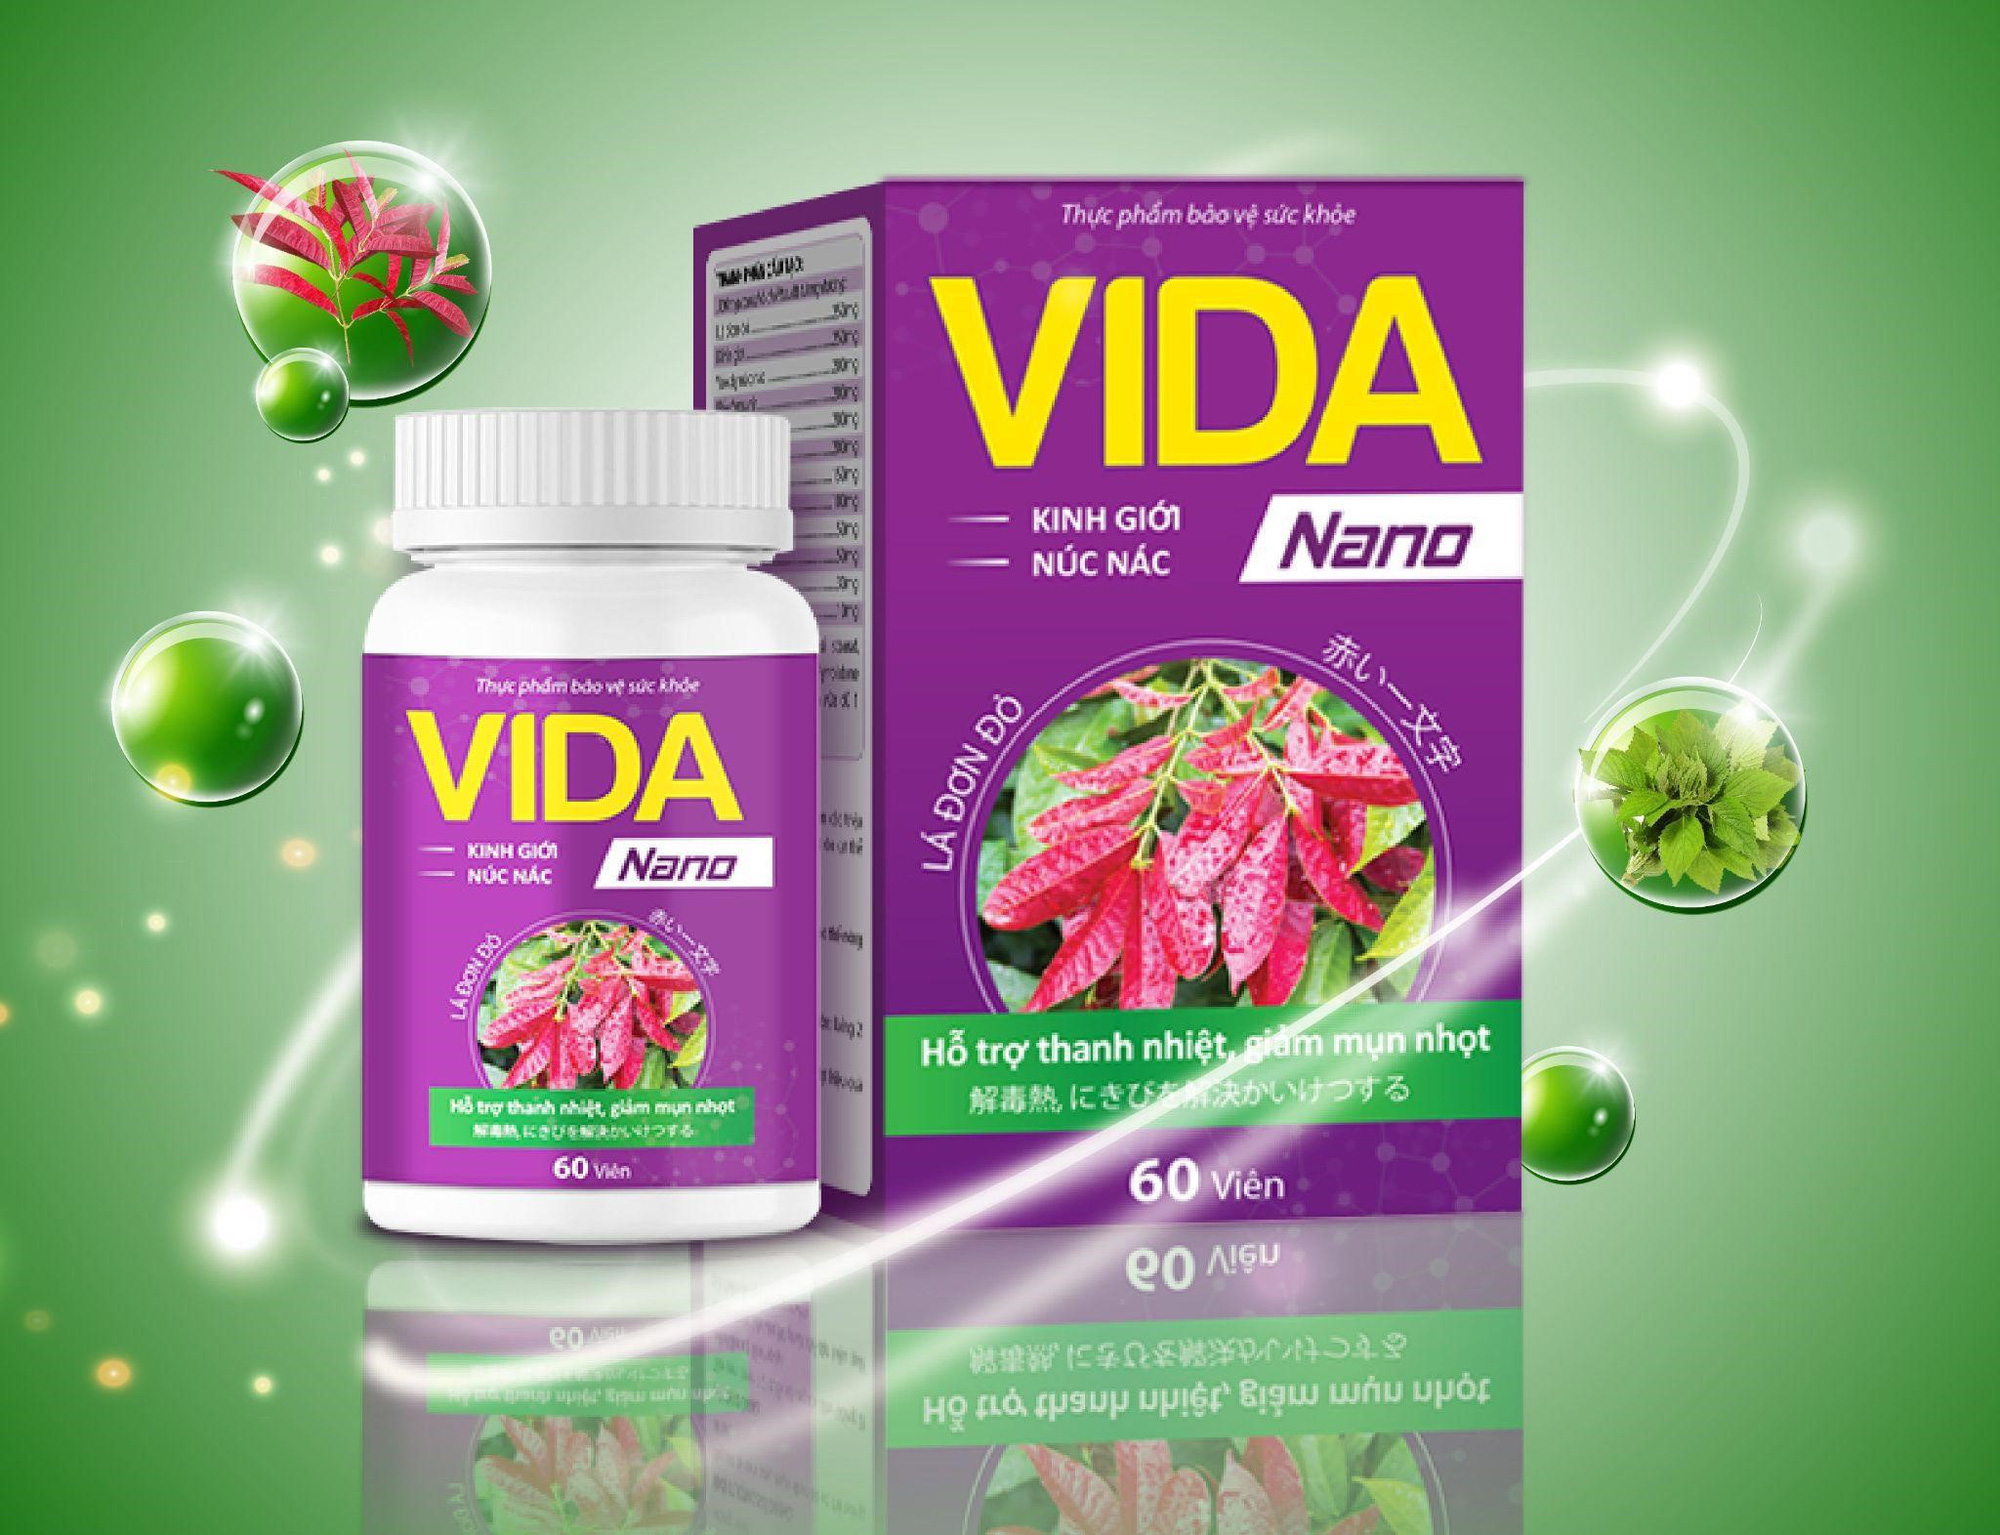 Vida Nano - Hỗ trợ điều trị ngứa, viêm da cơ địa combo gồm viên uống + kem bôi